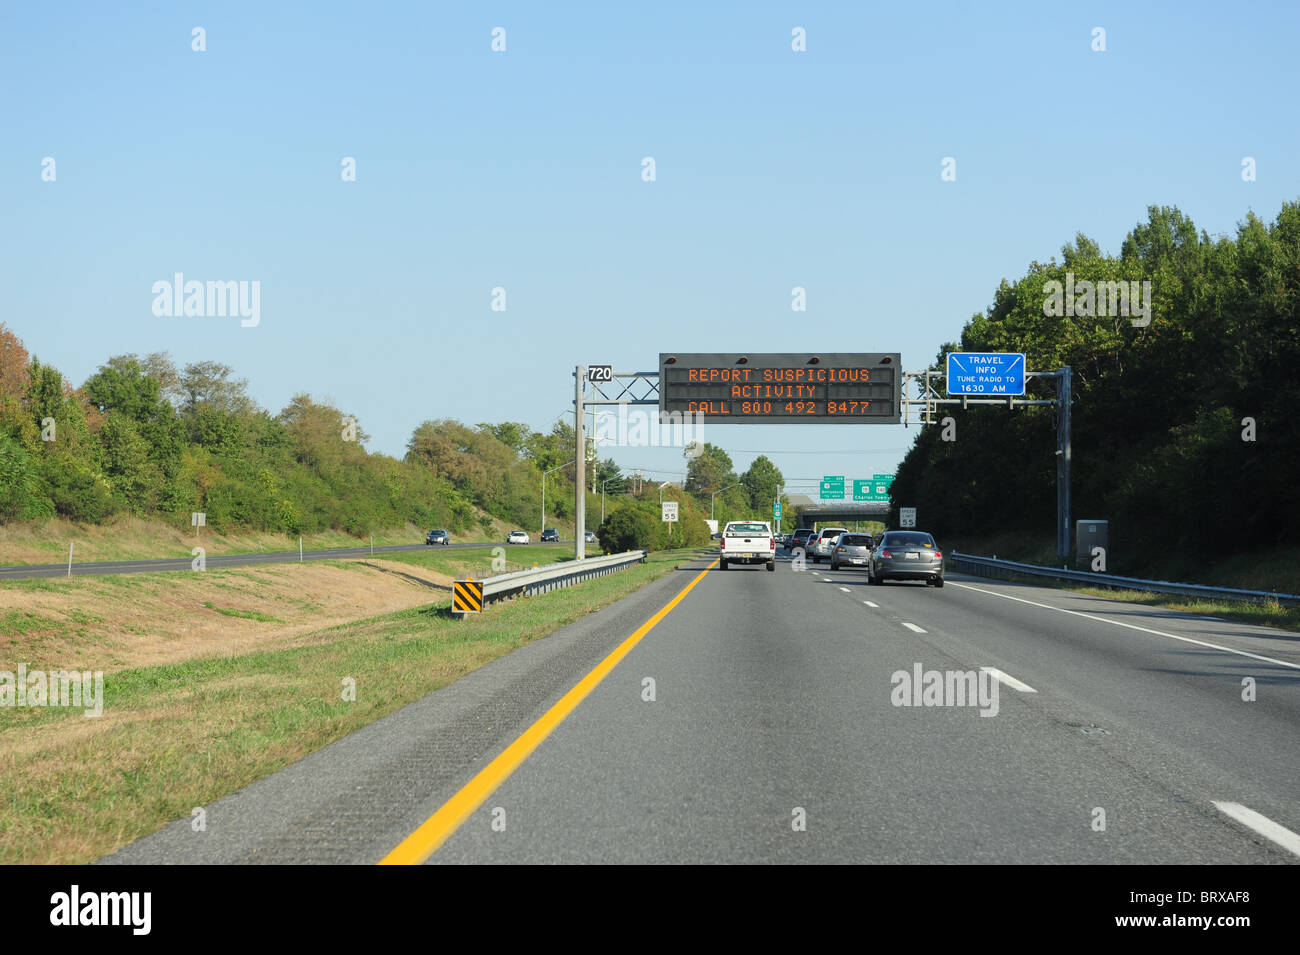 Homeland Security USA Terroristen Warnung melden auf Autobahn - melden Sie verdächtige Aktivitäten Stockfoto